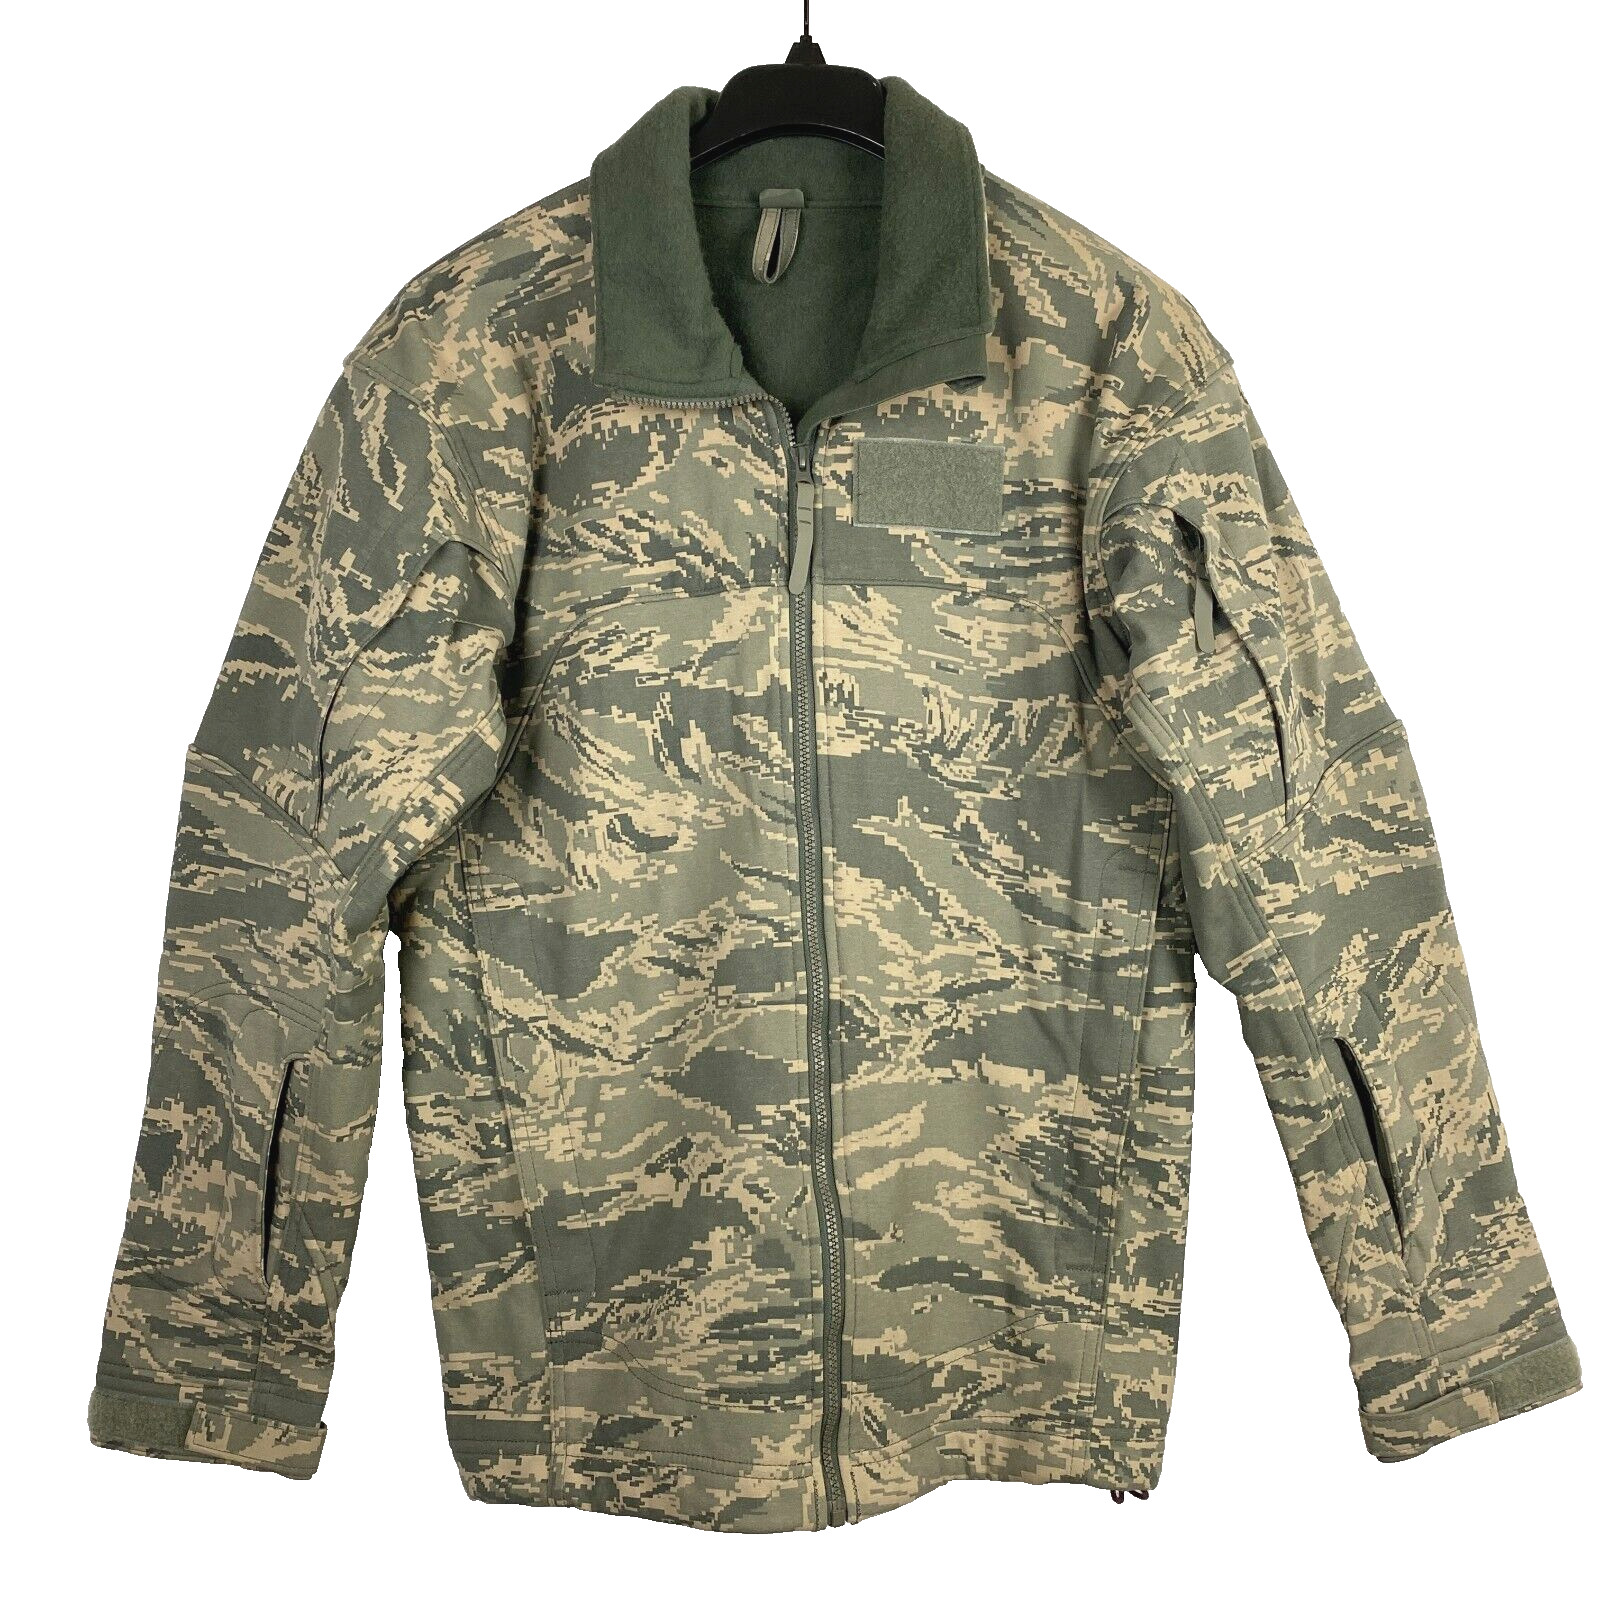 USAF MASSIF Elements Jacket Coat ABU Tiger Stripe Nomex Flame Resistant MED EUC